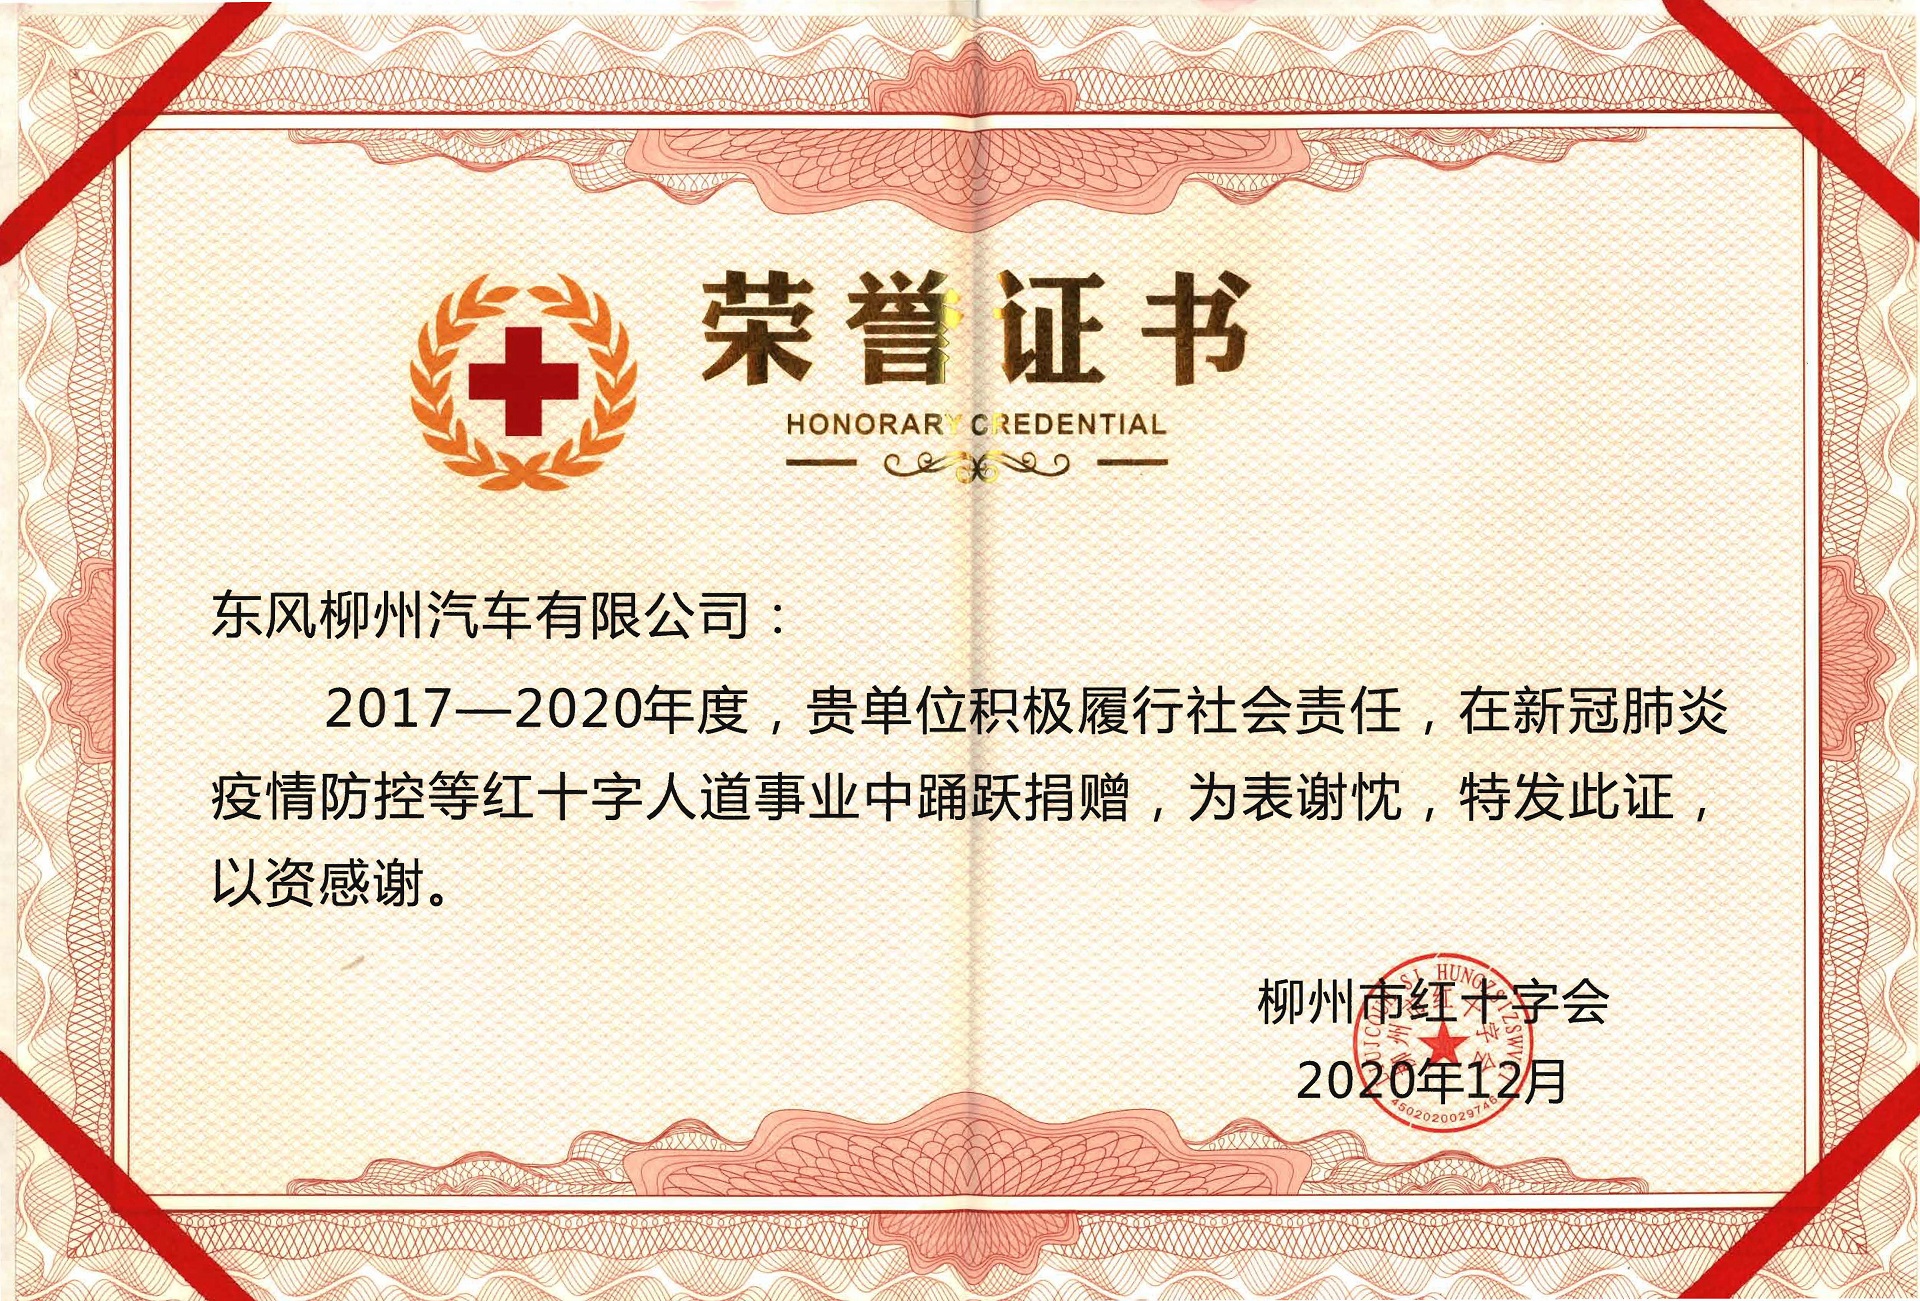 柳州紅十字會事業奉獻獎 